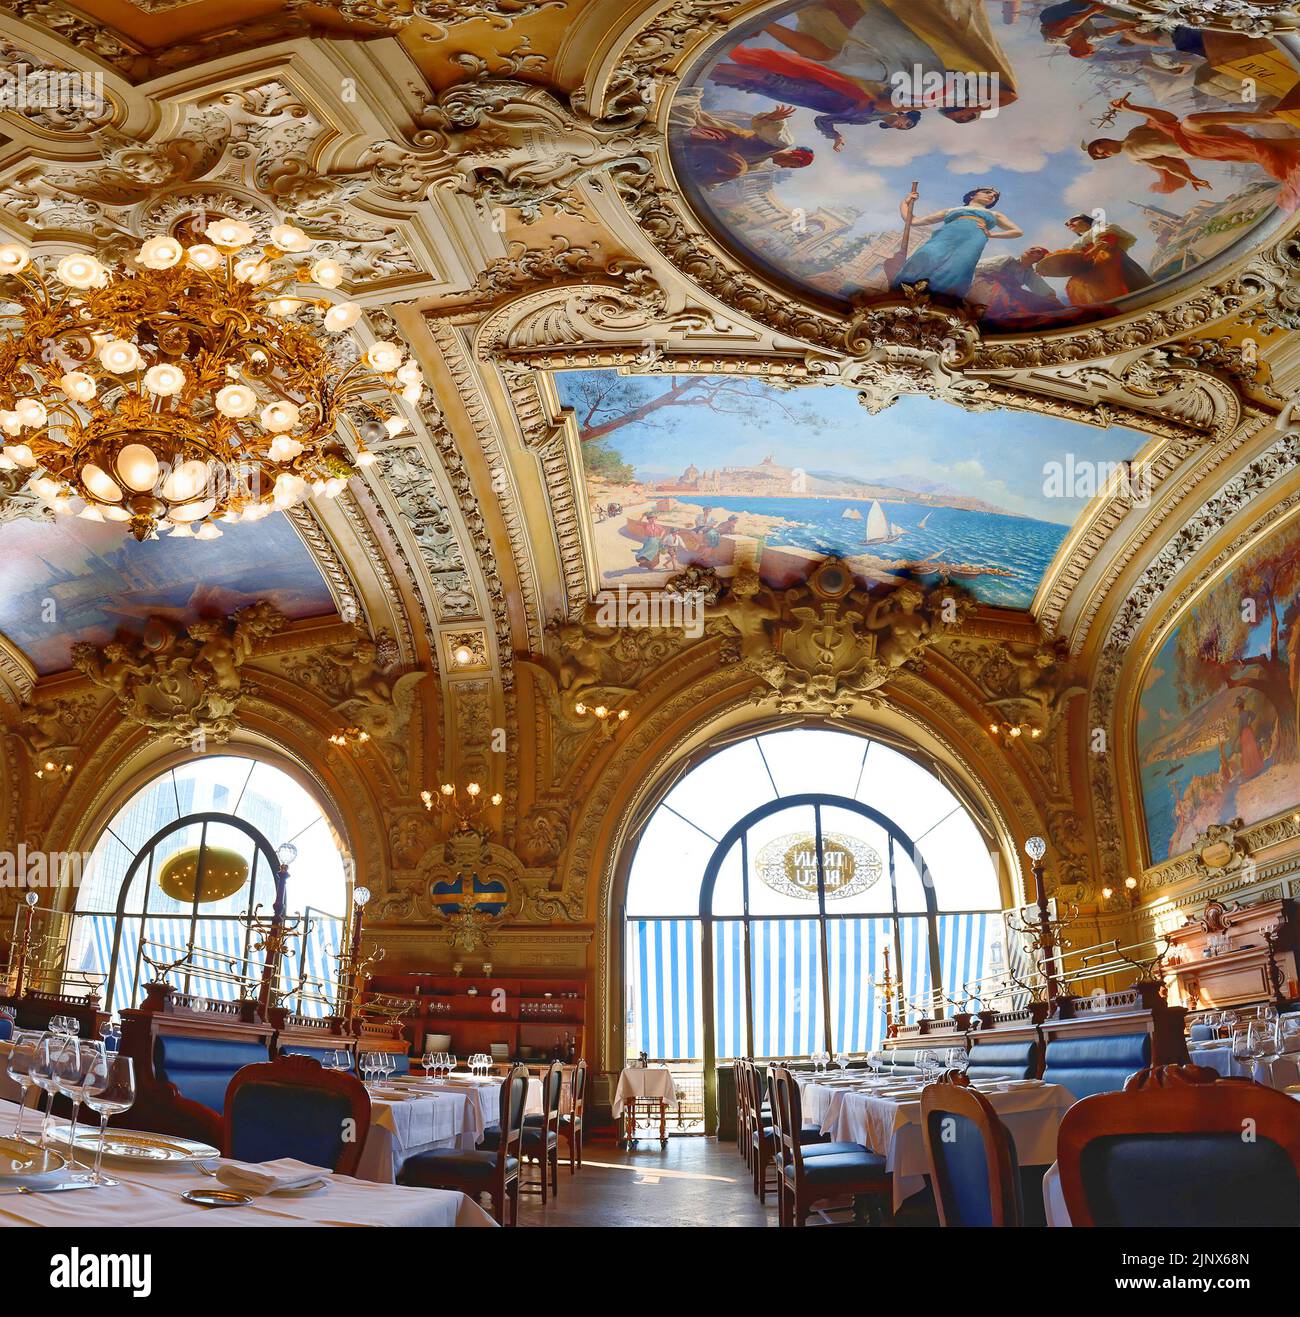 Le Train Bleu es un famoso restaurante situado en la sala de la estación de tren Gare de Lyon en París . Foto de stock